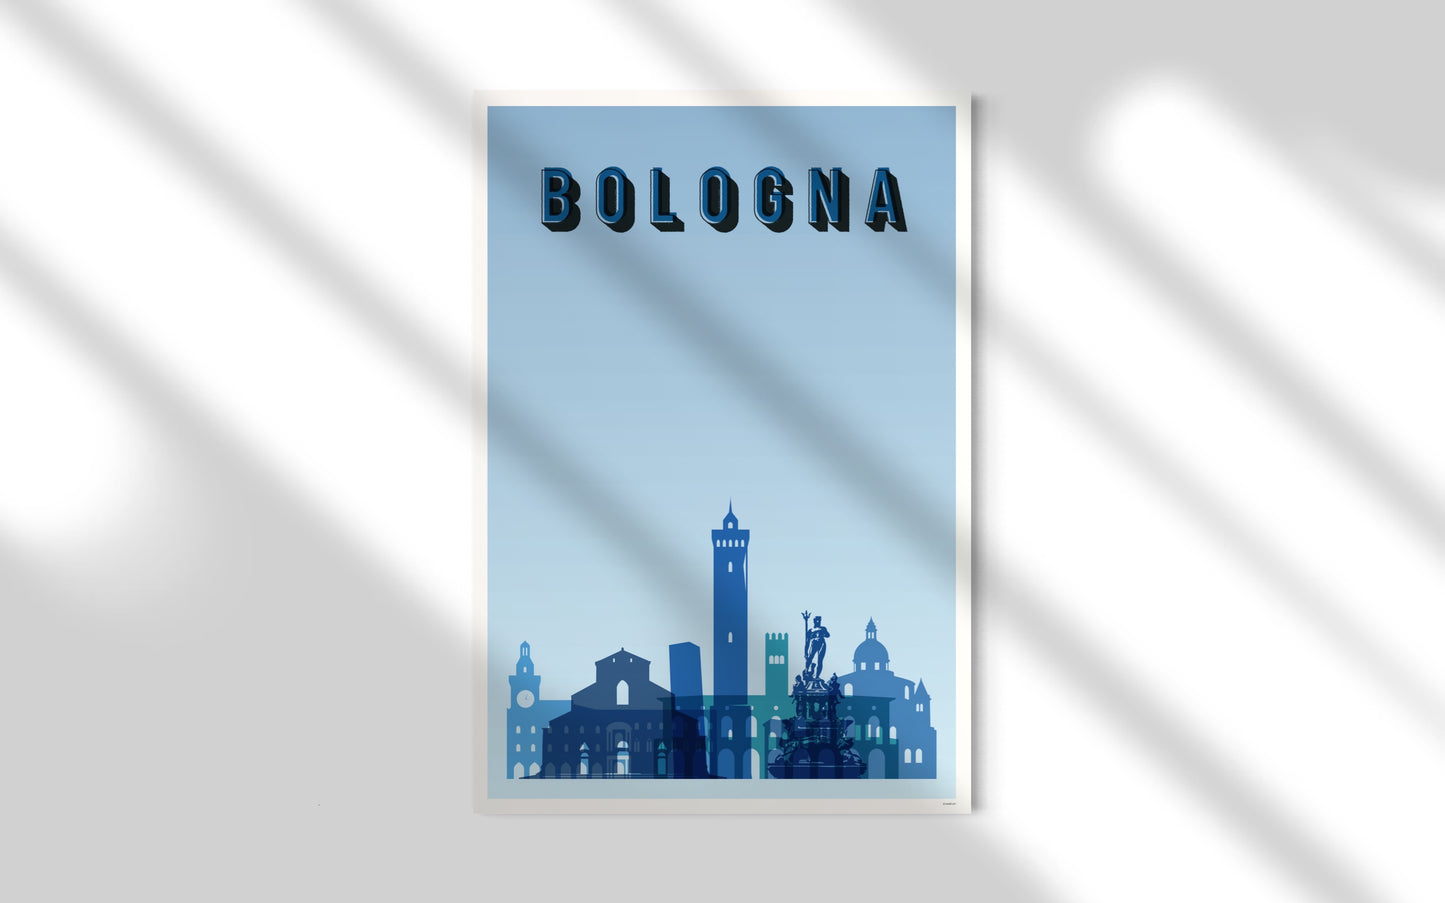 Bologna in blue